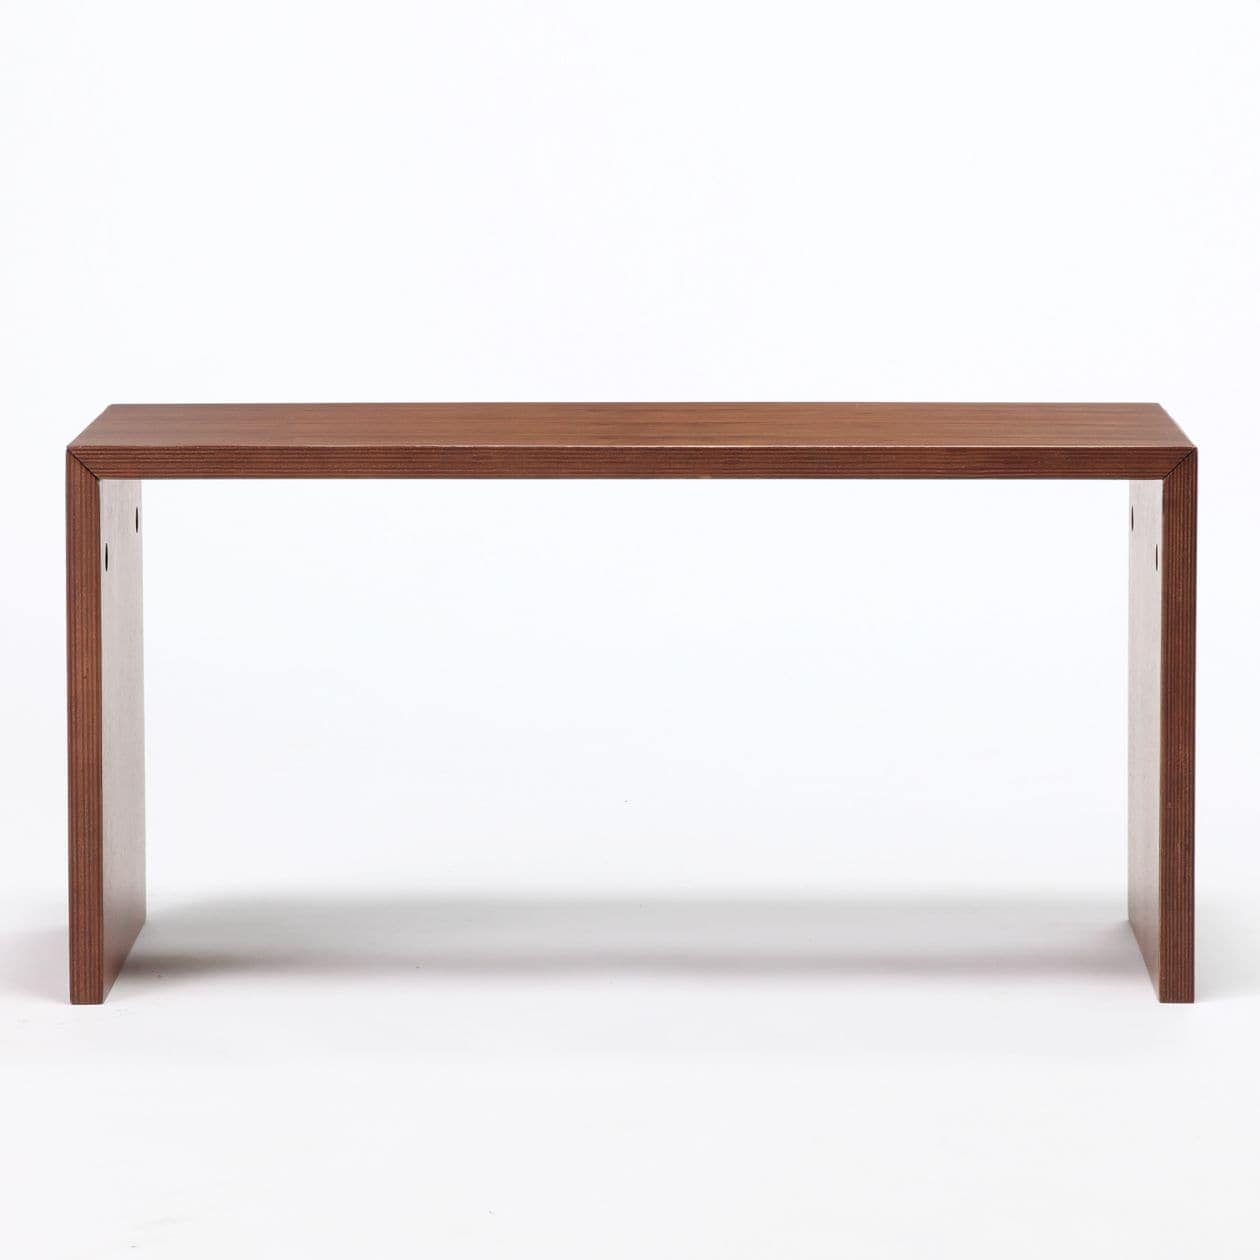 格安コの字家具 - サイドテーブル・ナイトテーブル・ローテーブル